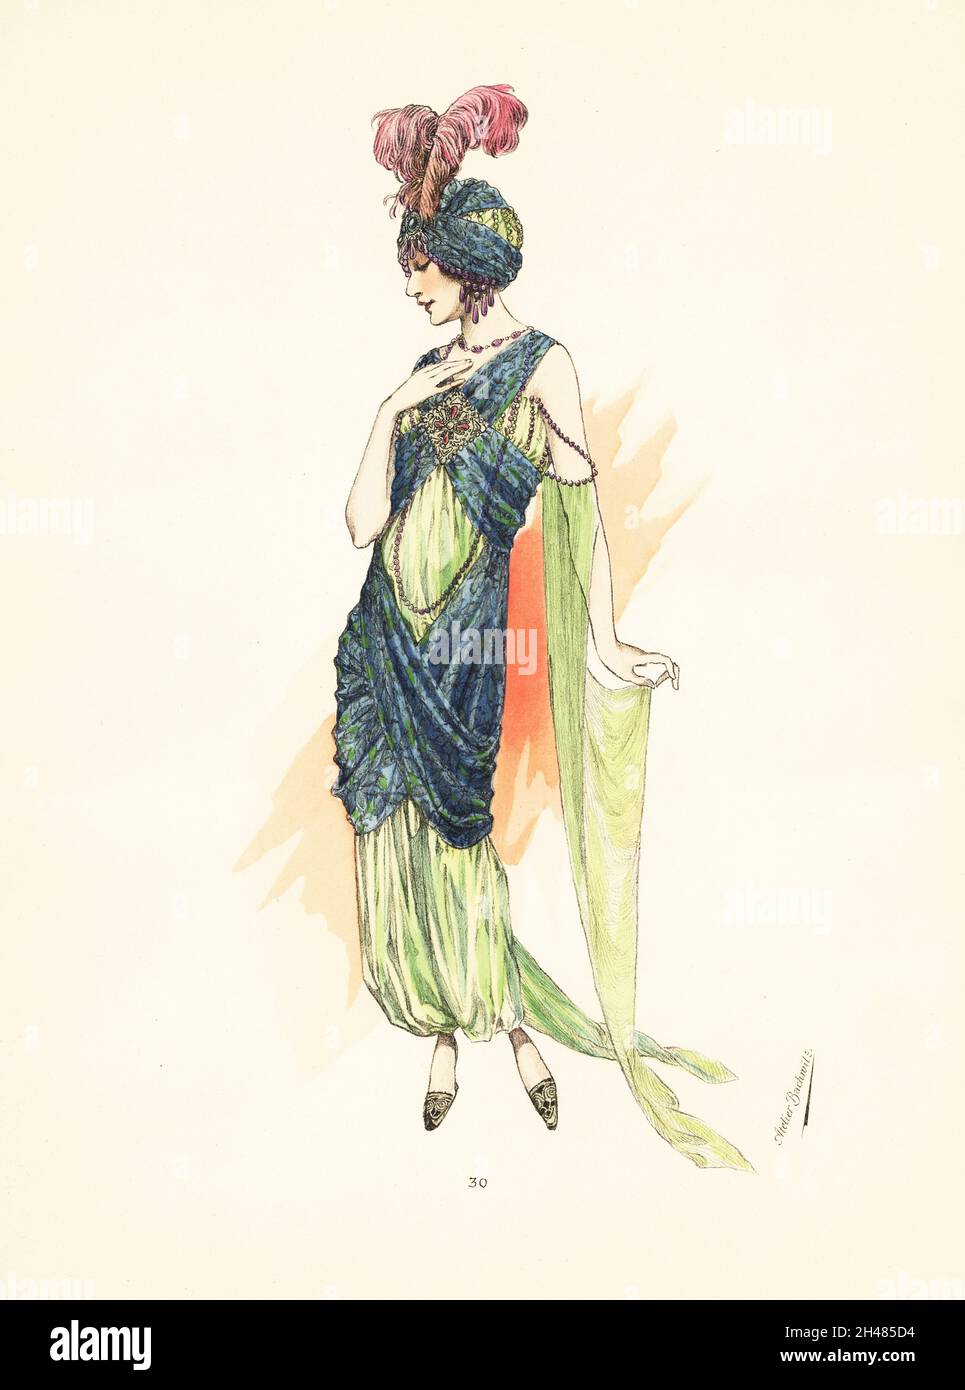 Femme en costume de fantaisie comme Scheherazade.Robe en crêpe de Chine  vert du Nil et brocart métallique, avec broderie or et argent, turban  plumé, pantalon de harem, manches traînantes vert du Nil.Lithographie